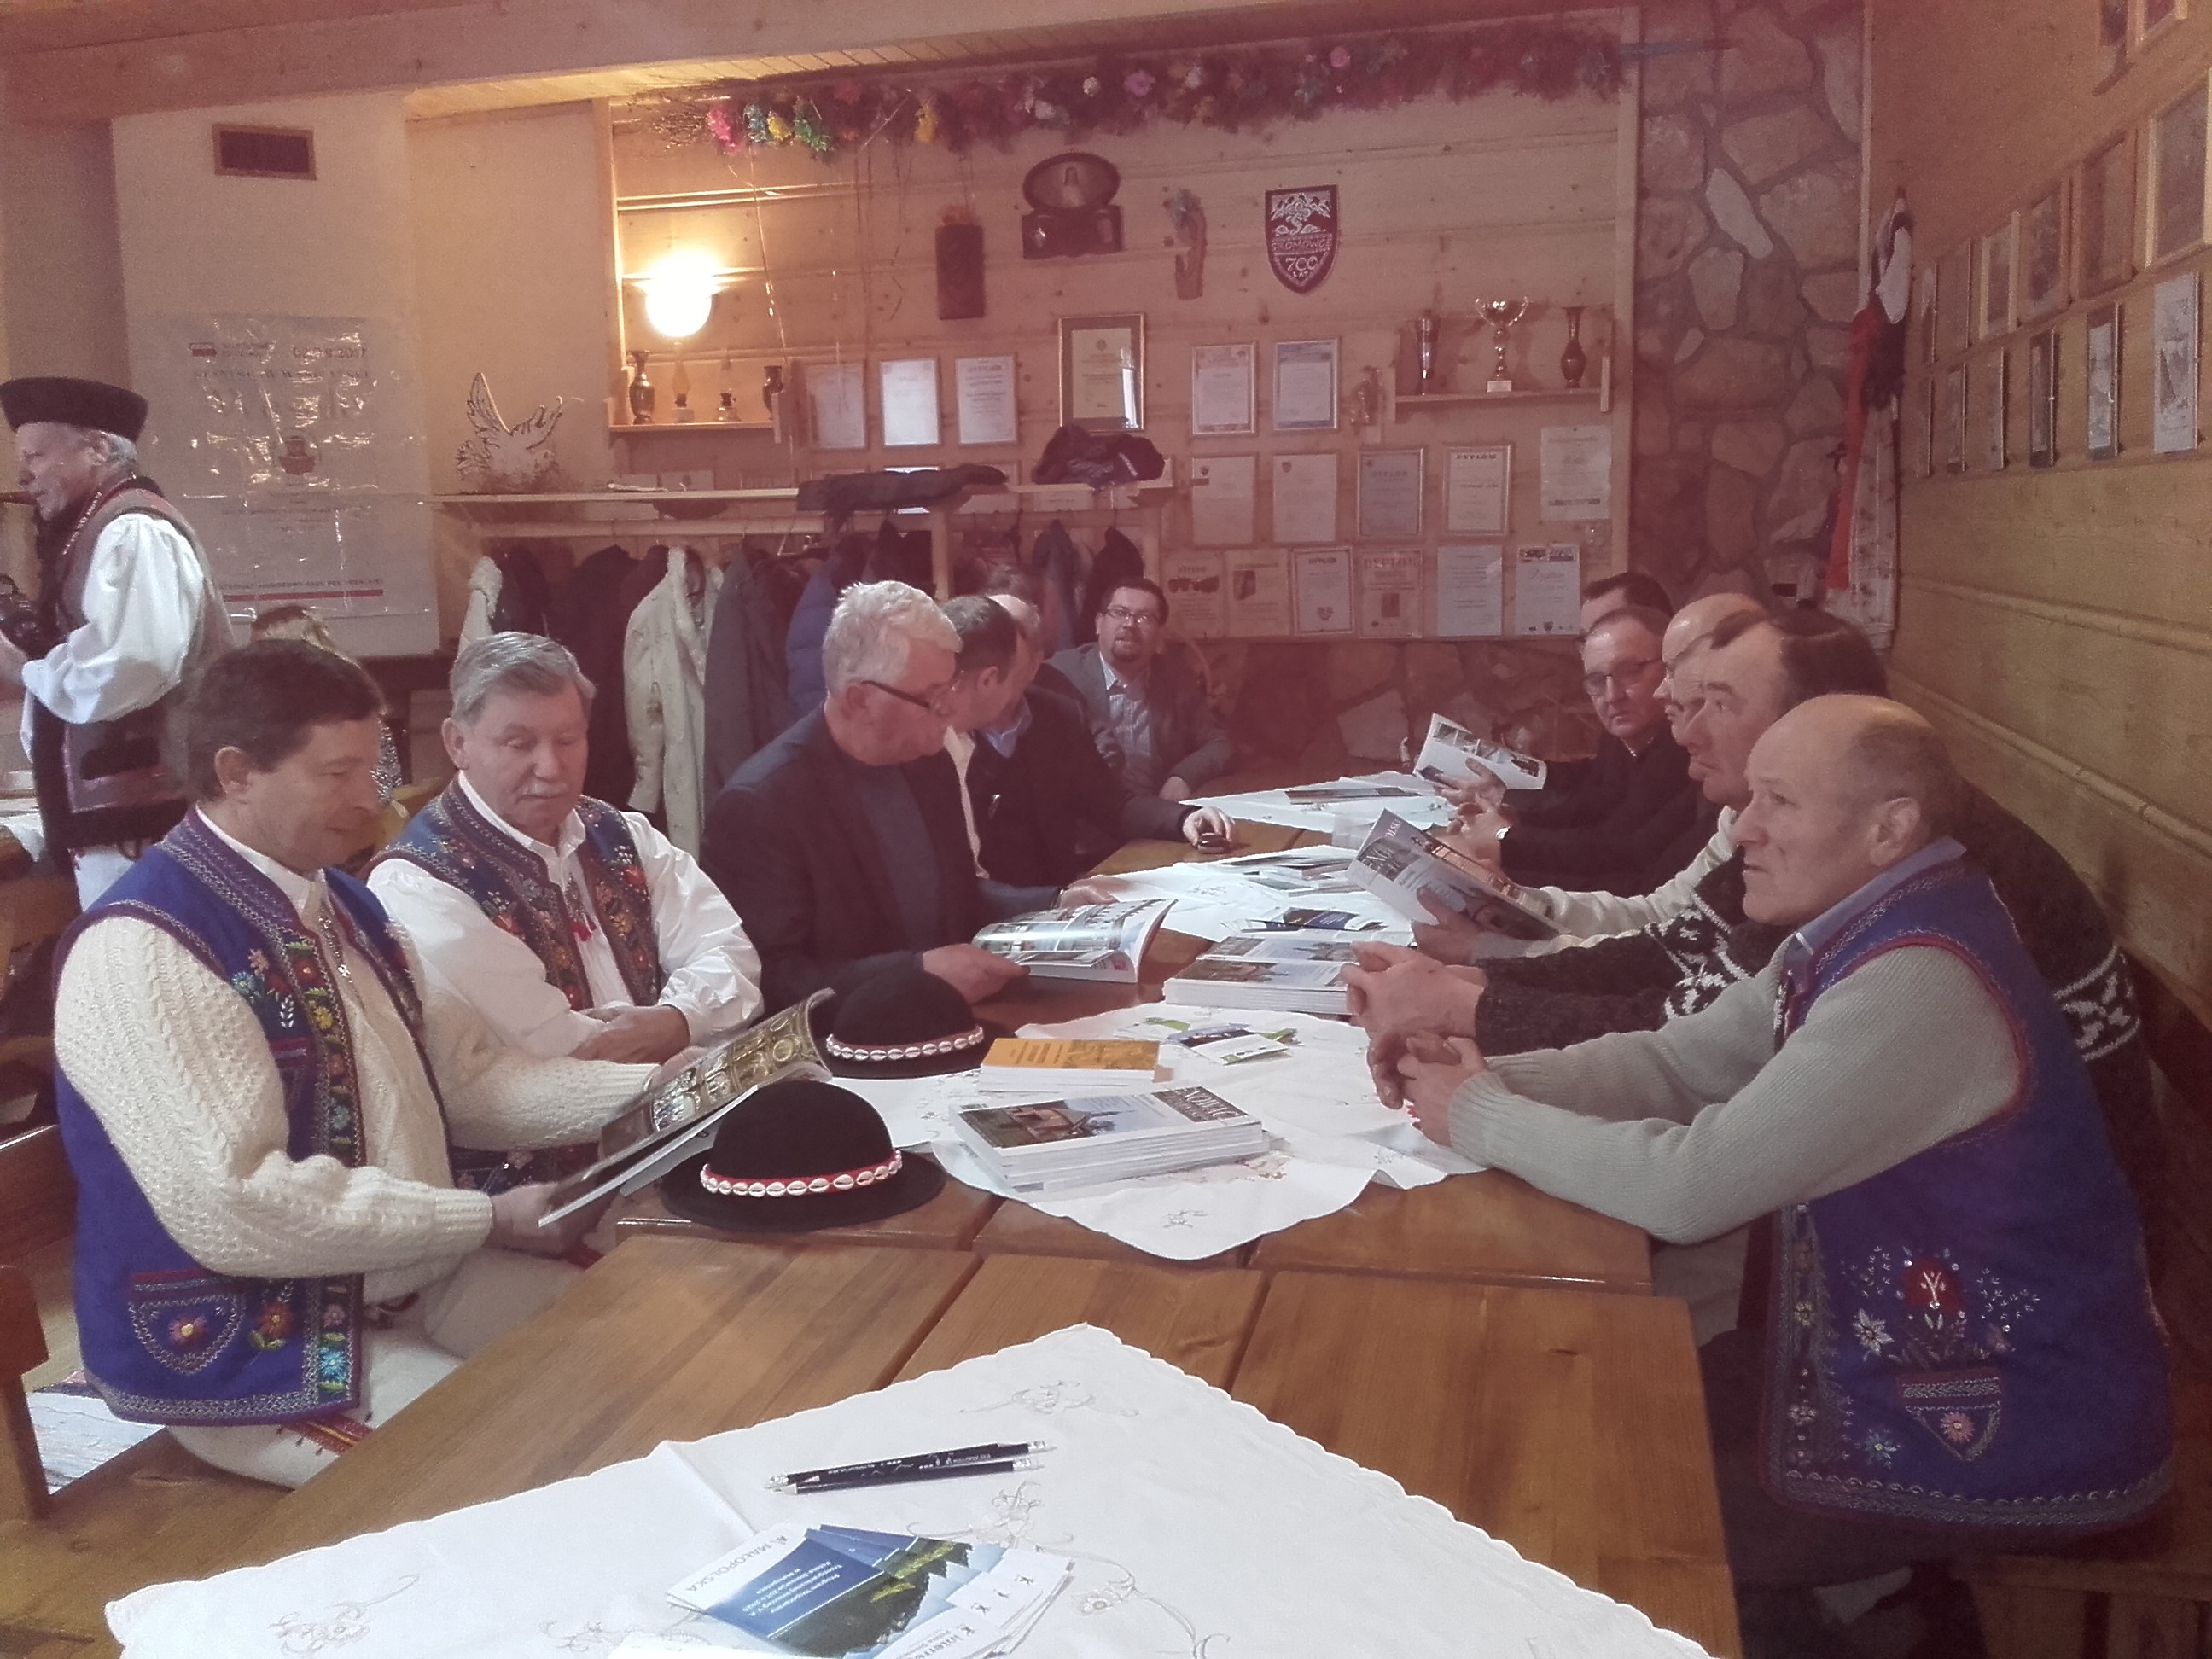 CRinMA regional meeting in Sromowce Wyżne